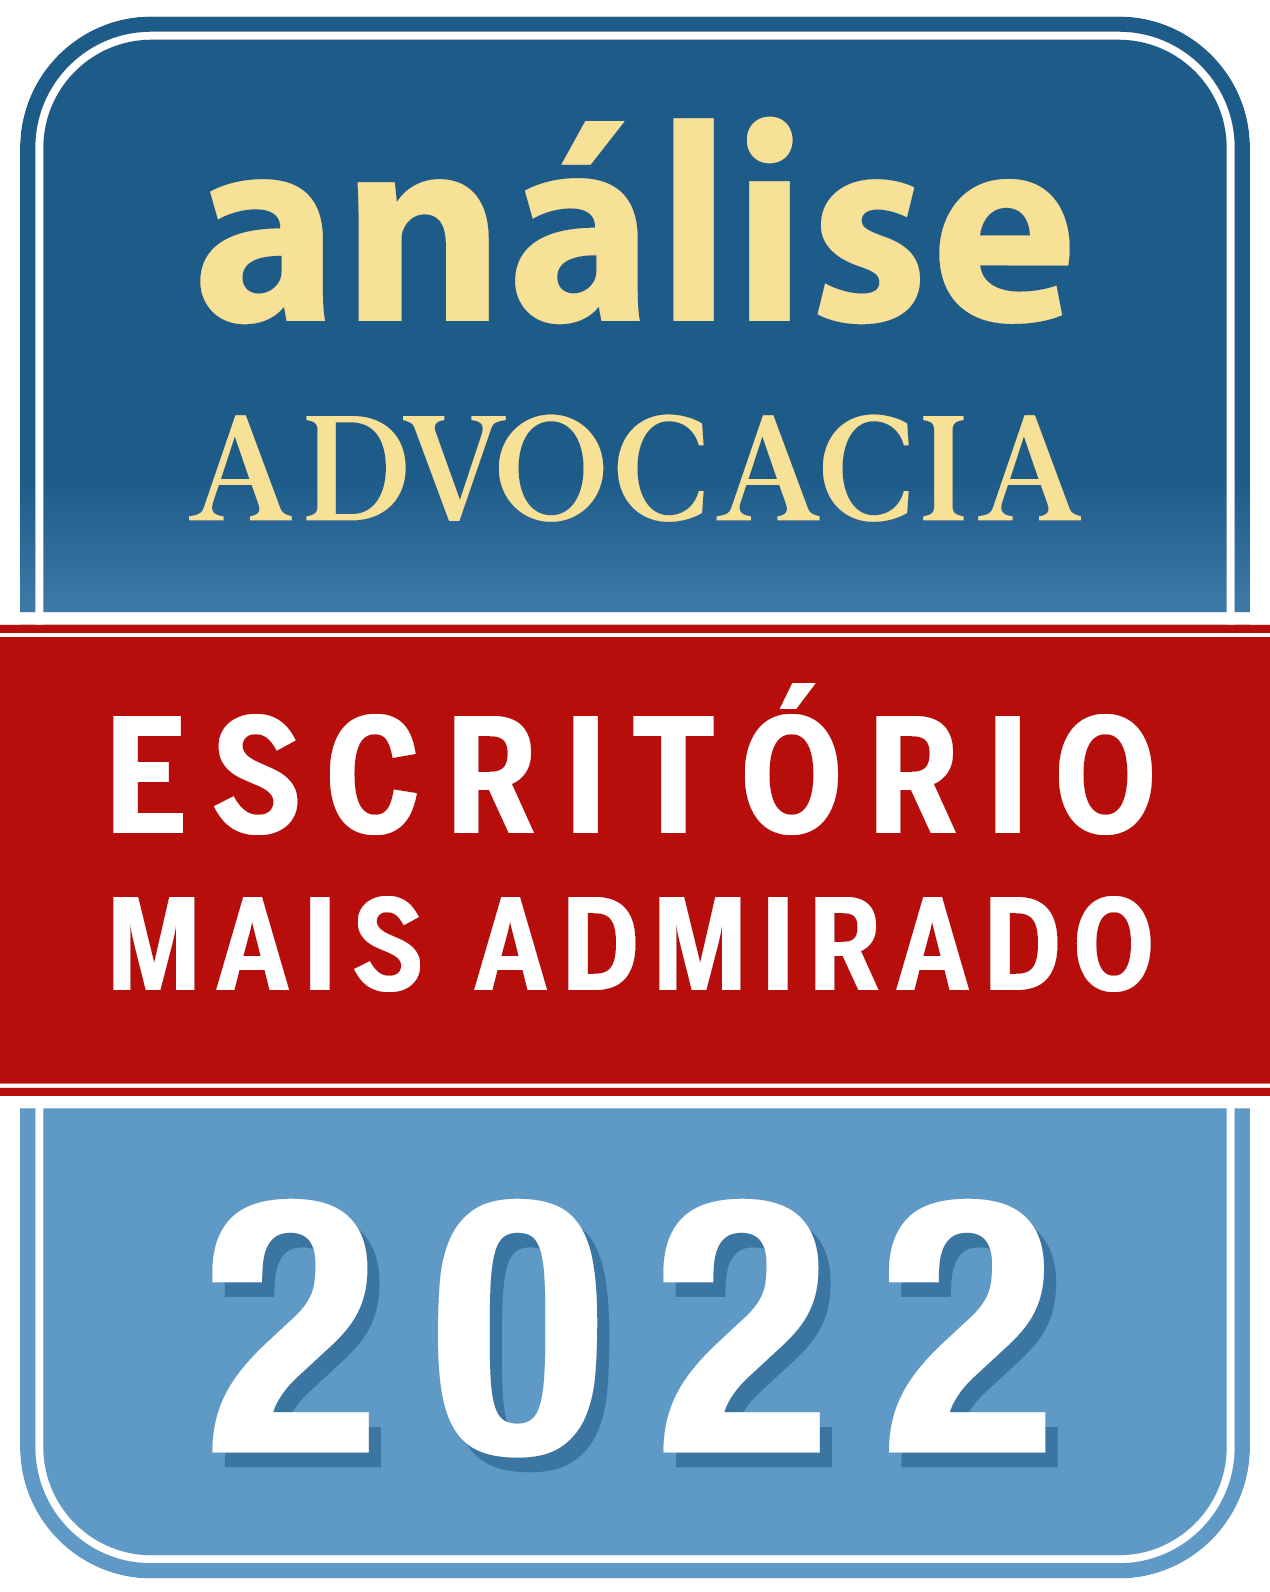 Certificado: Análise Advocacia 500 - Escritório Mais Admirado 2022